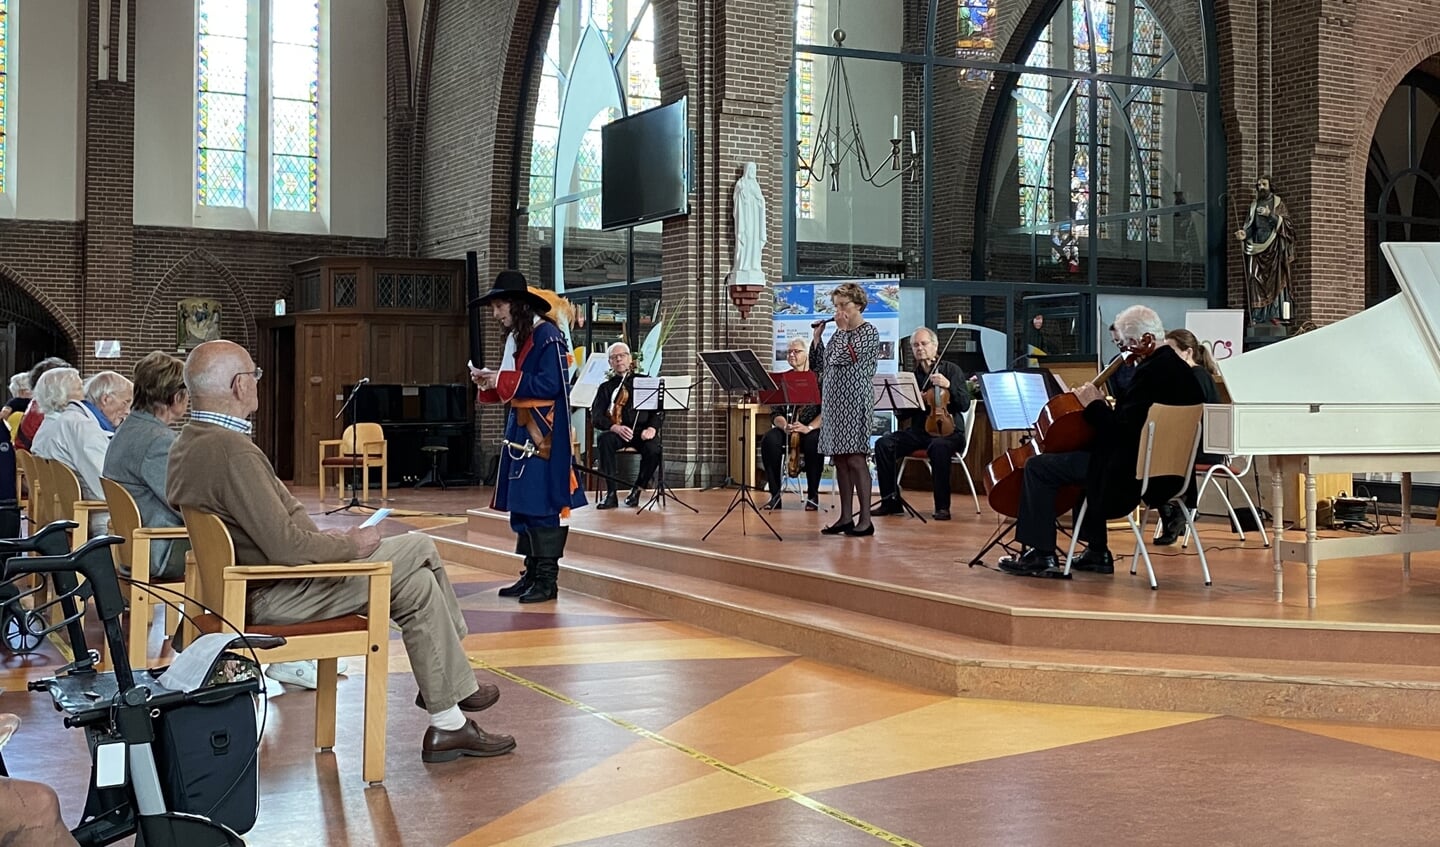 In de katholieke kerk was een concert van barok-ensemble Camerata Capelle, afgewisseld met verhalen over de lokale geschiedenis door Michiel van de Burgt.